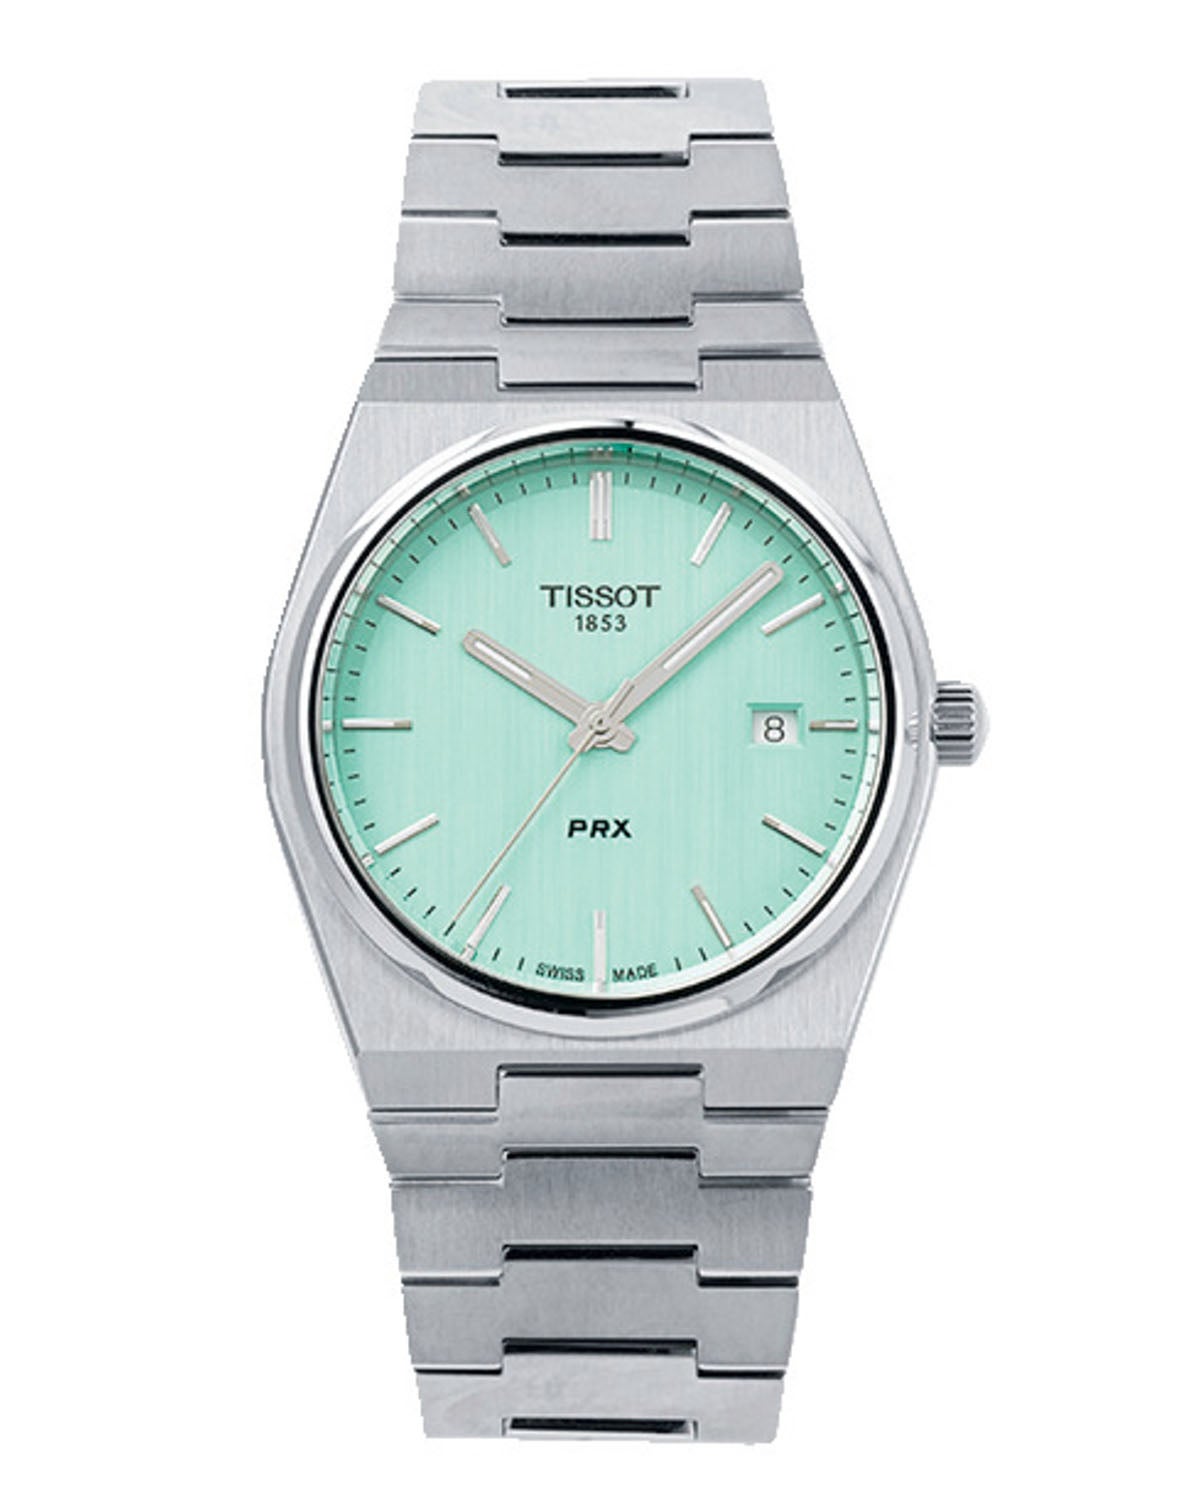 ティソのターコイズダイヤルの腕時計